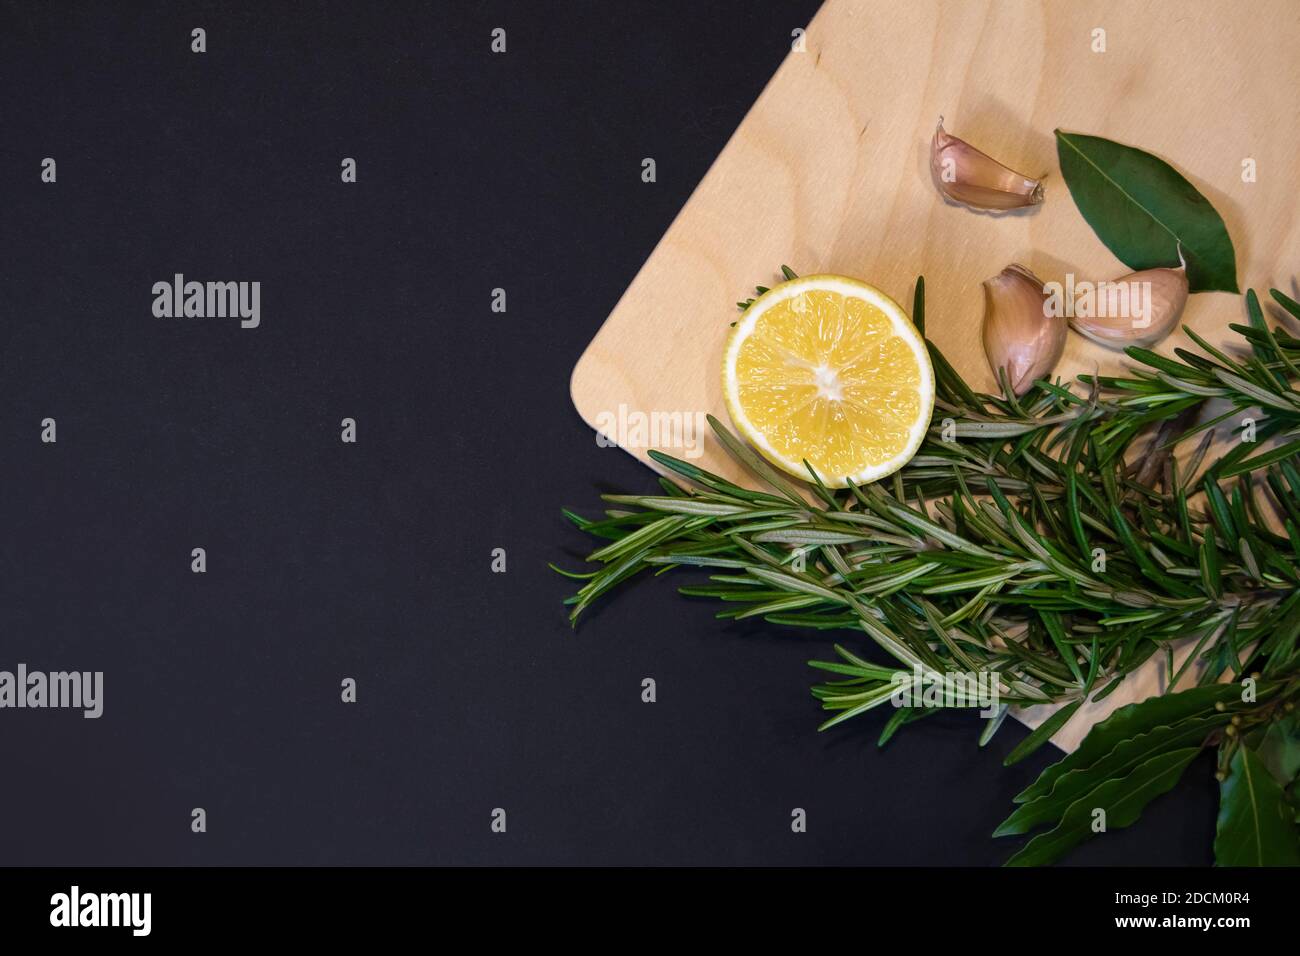 Tagliere di legno chiaro incorniciato con foglie di alloro, rametti di rosmarino, limone e spicchi d'aglio, modello di designer con sfondo grigio scuro Foto Stock